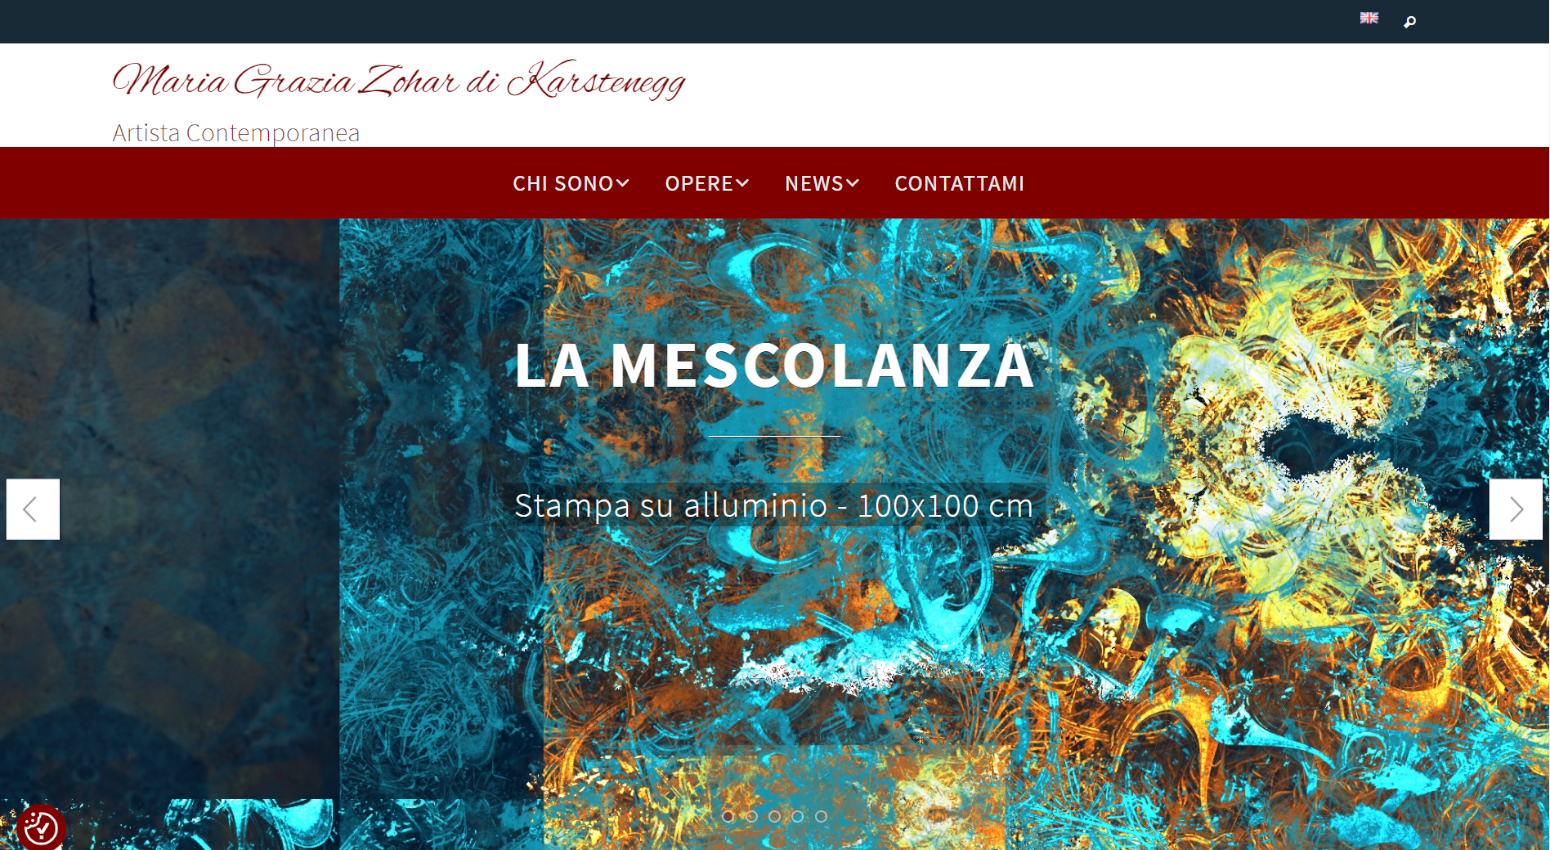 Sito web dell'artista contemporanea Maria Grazia Zohar di Kasternegg dedicato alla promozione dell'arte e alla vendita di quadri online